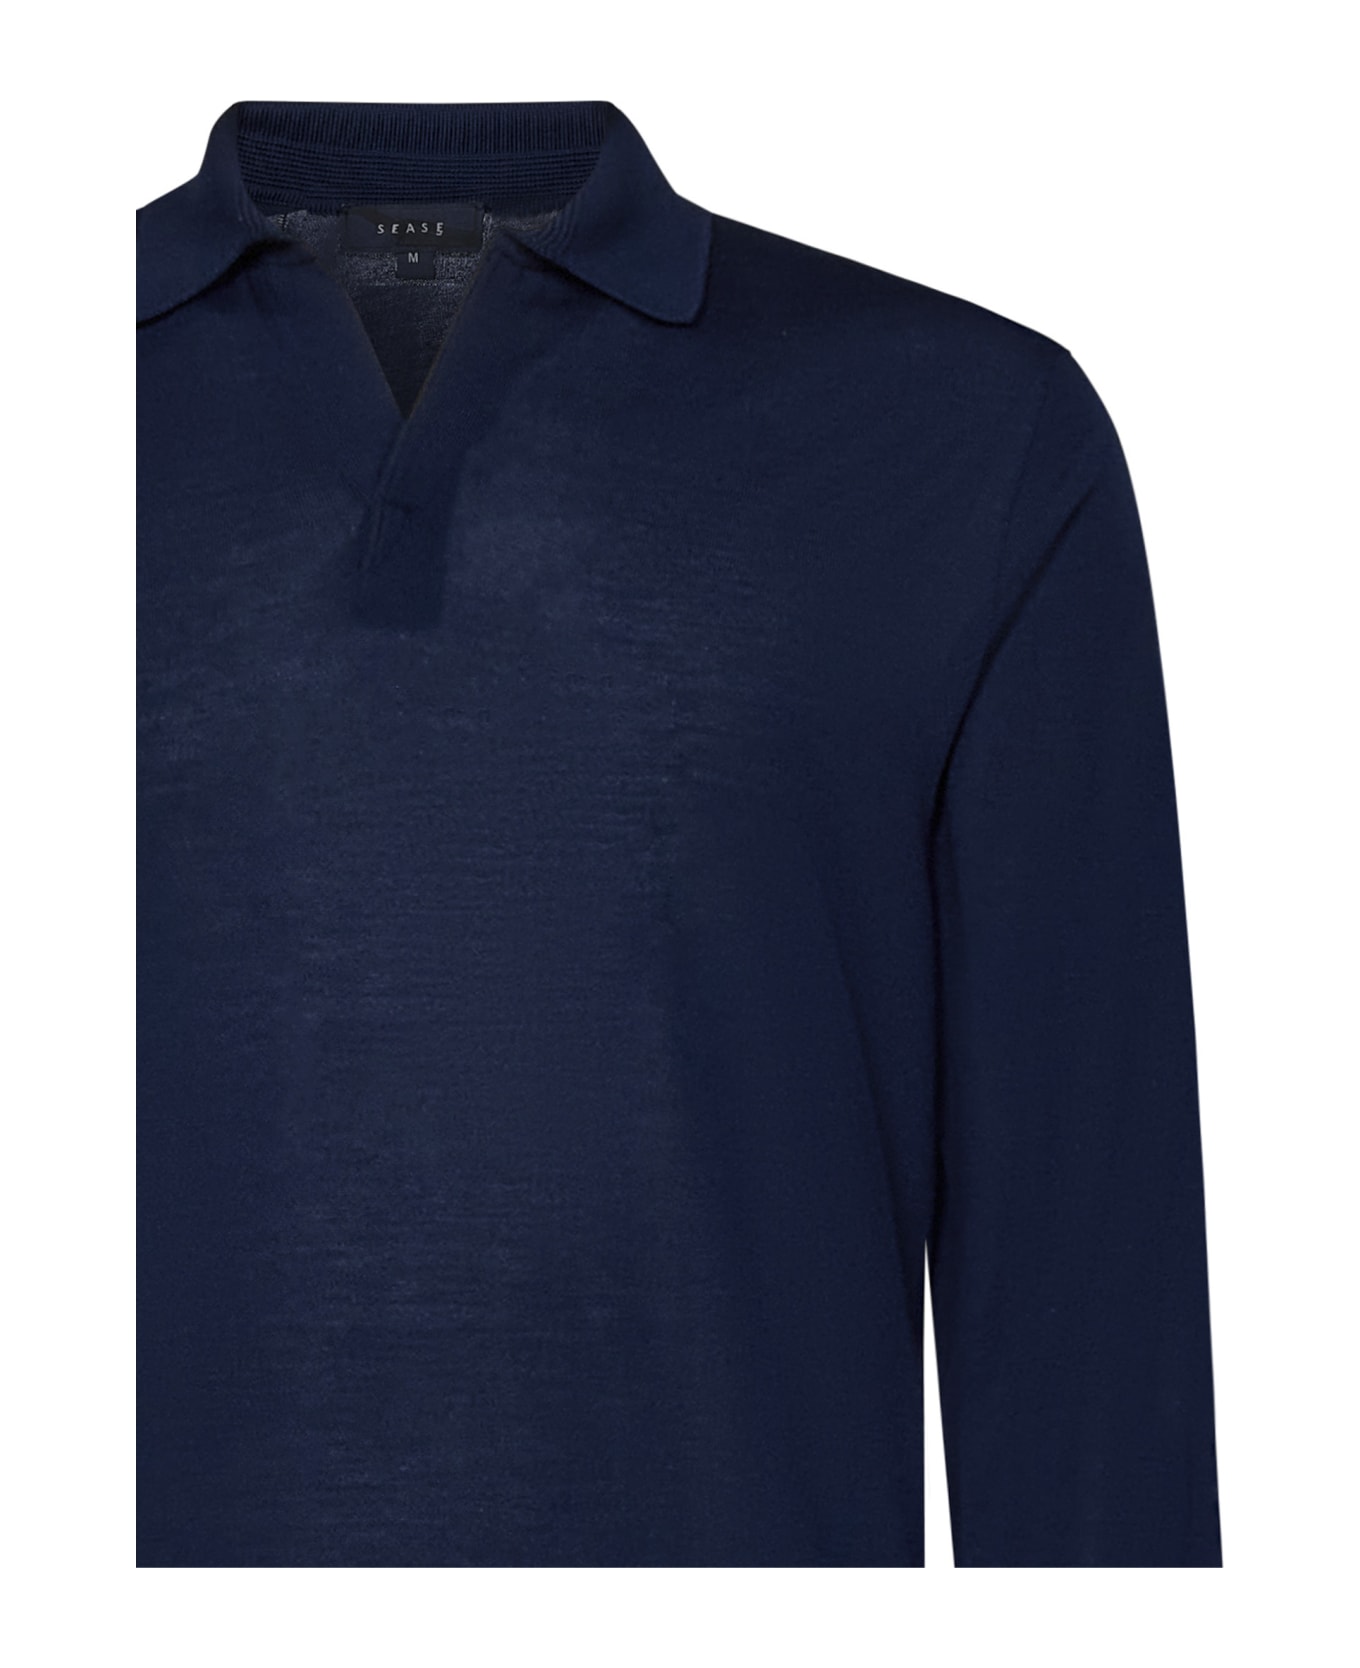 Sease Lasca Polo Shirt - Blue